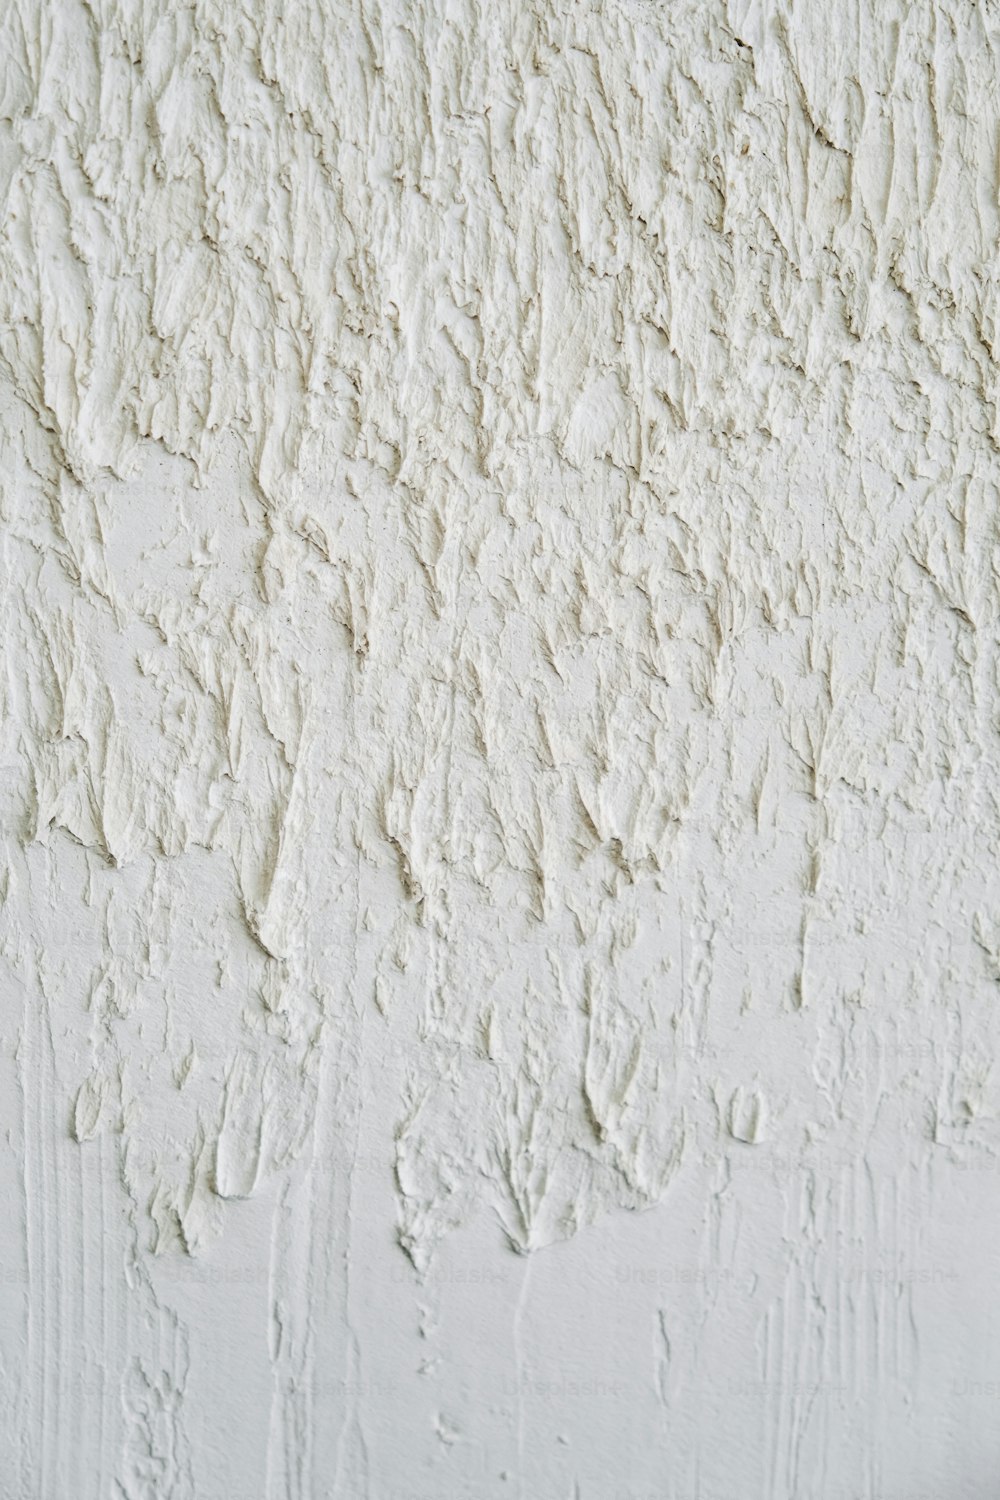 Nahaufnahme einer Wand mit weißer Farbe